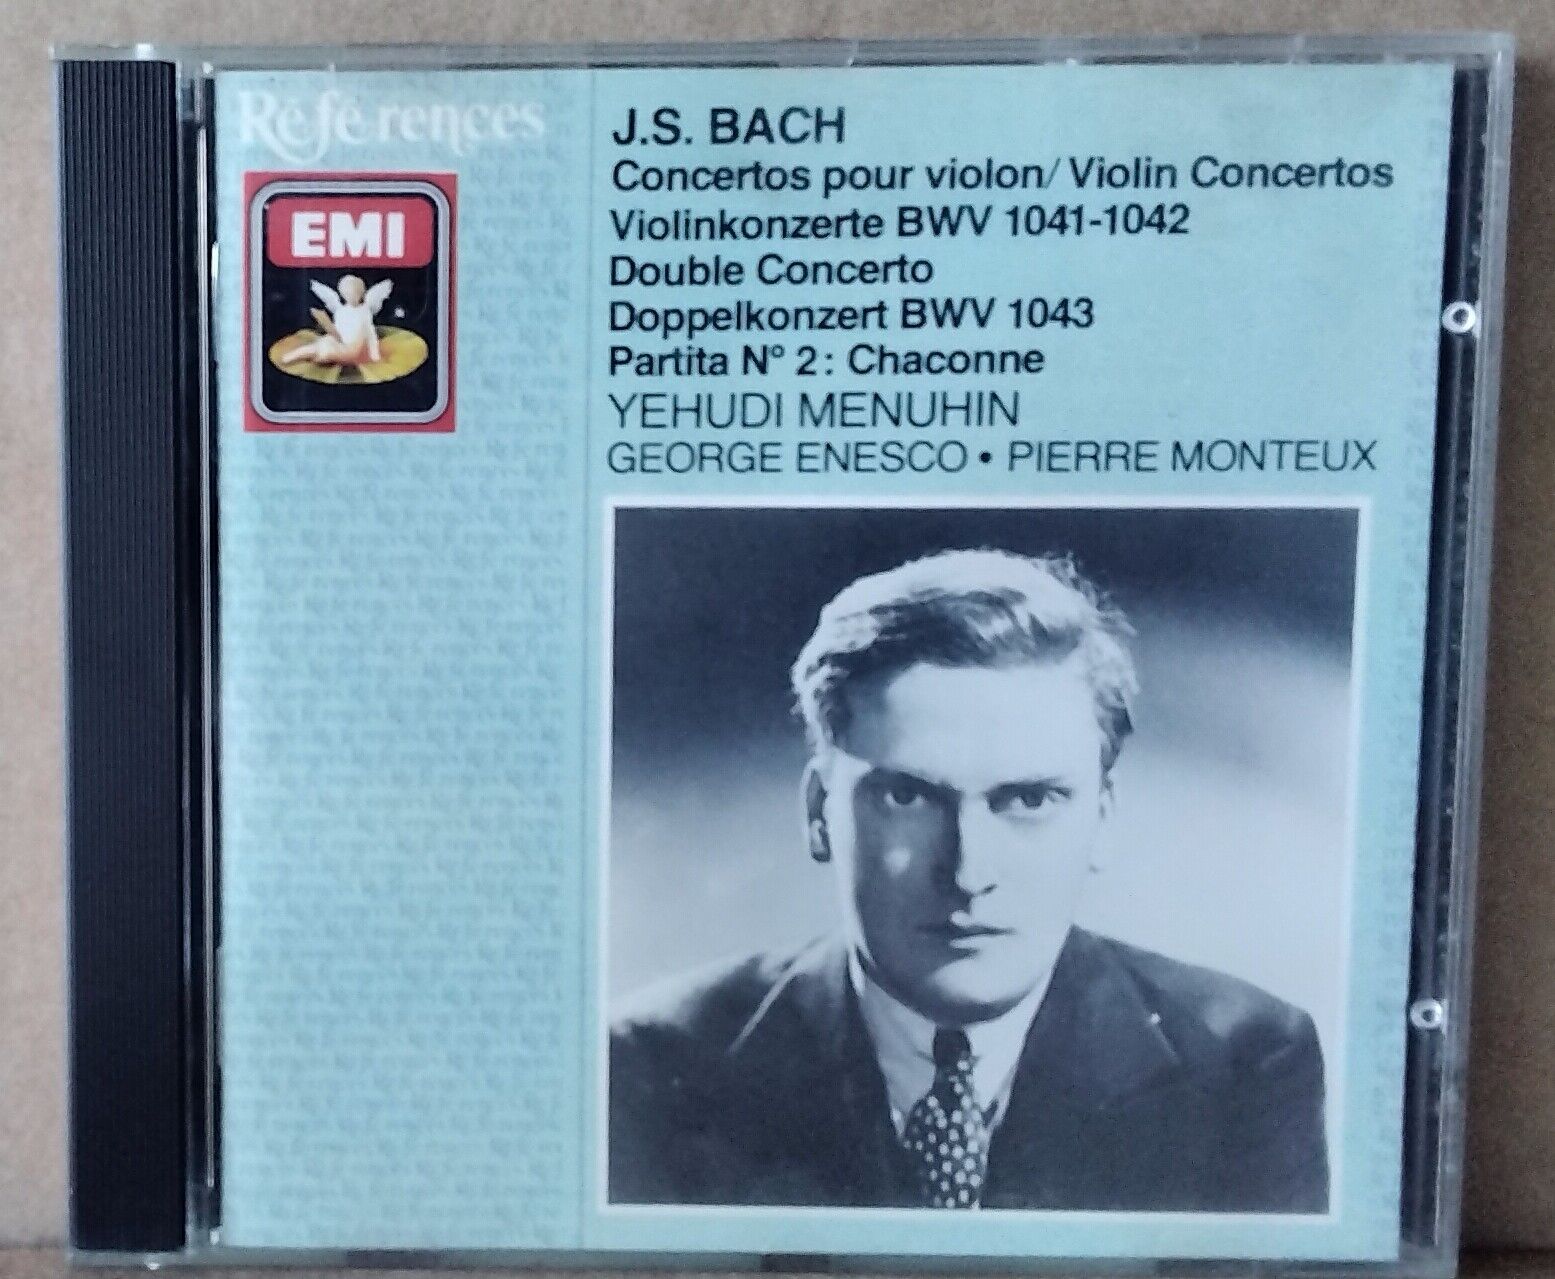 EMI CDH 7610182 UK BACH - VIOLIN CONCERTOS MENUHIN, ENESCO, MONTEUX 1988 CD